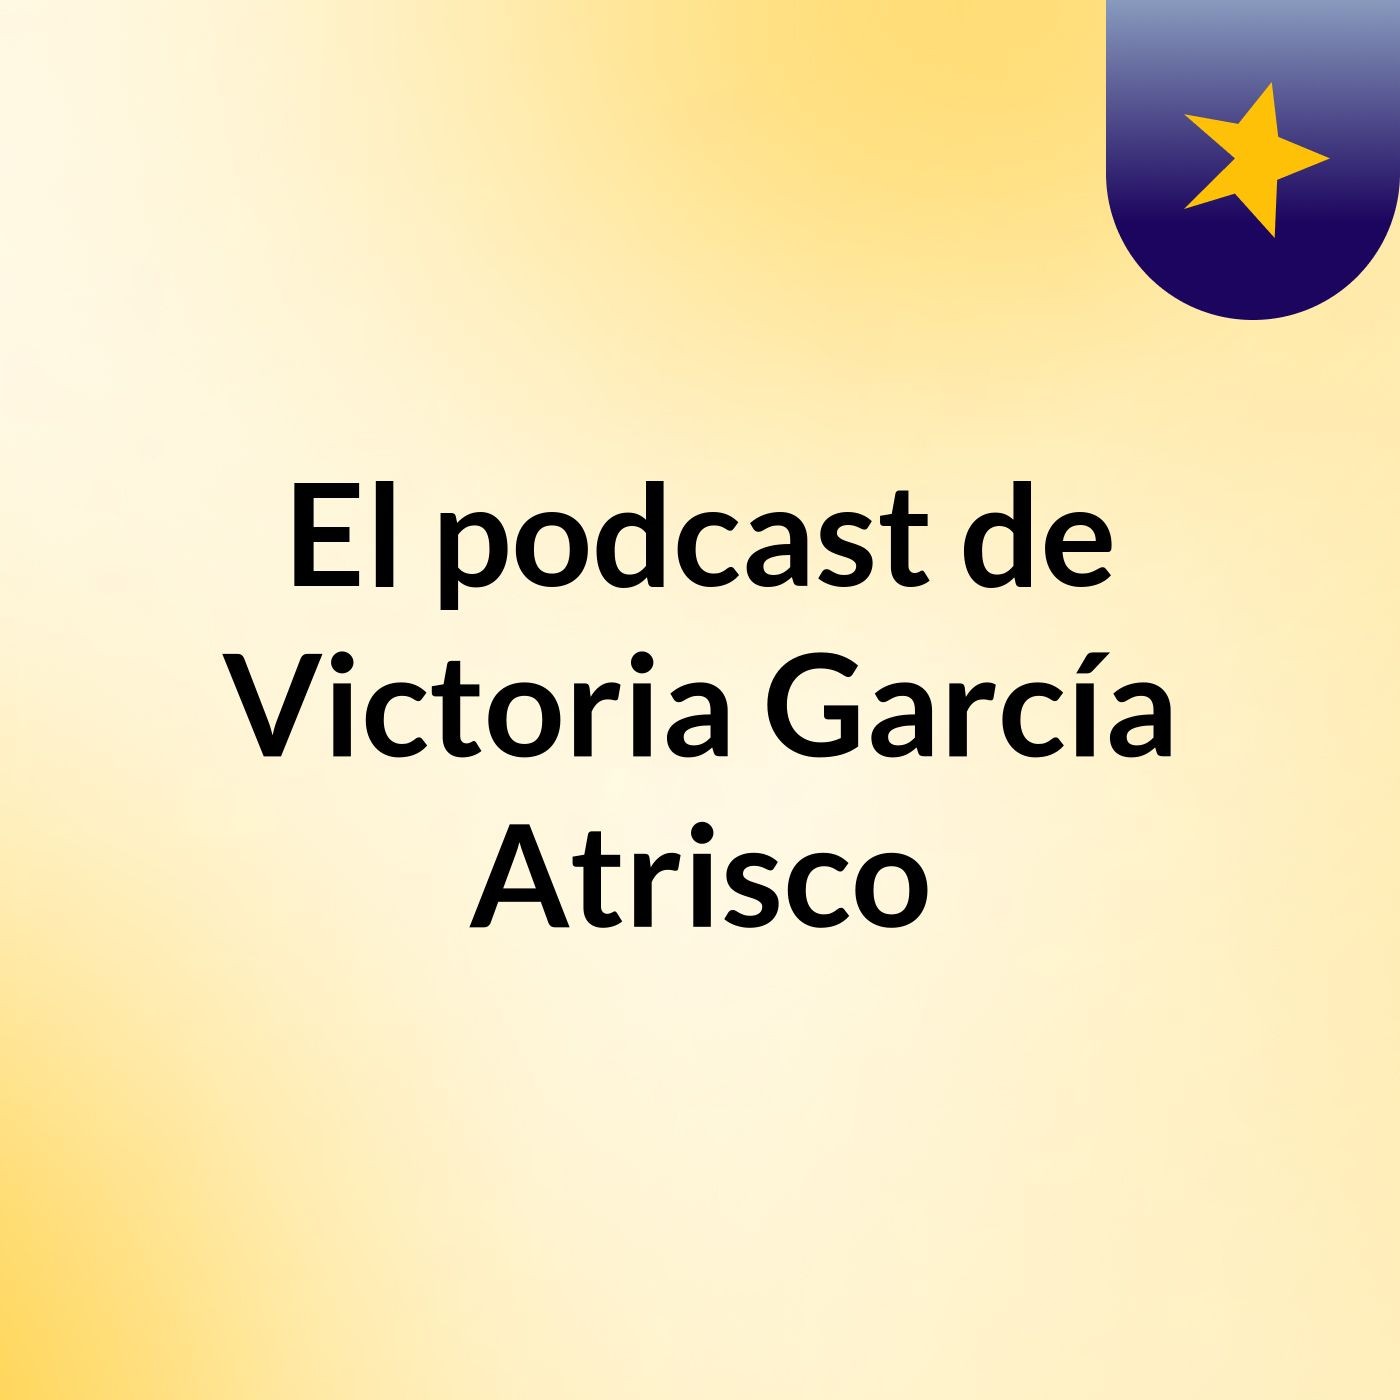 El podcast de Victoria García Atrisco